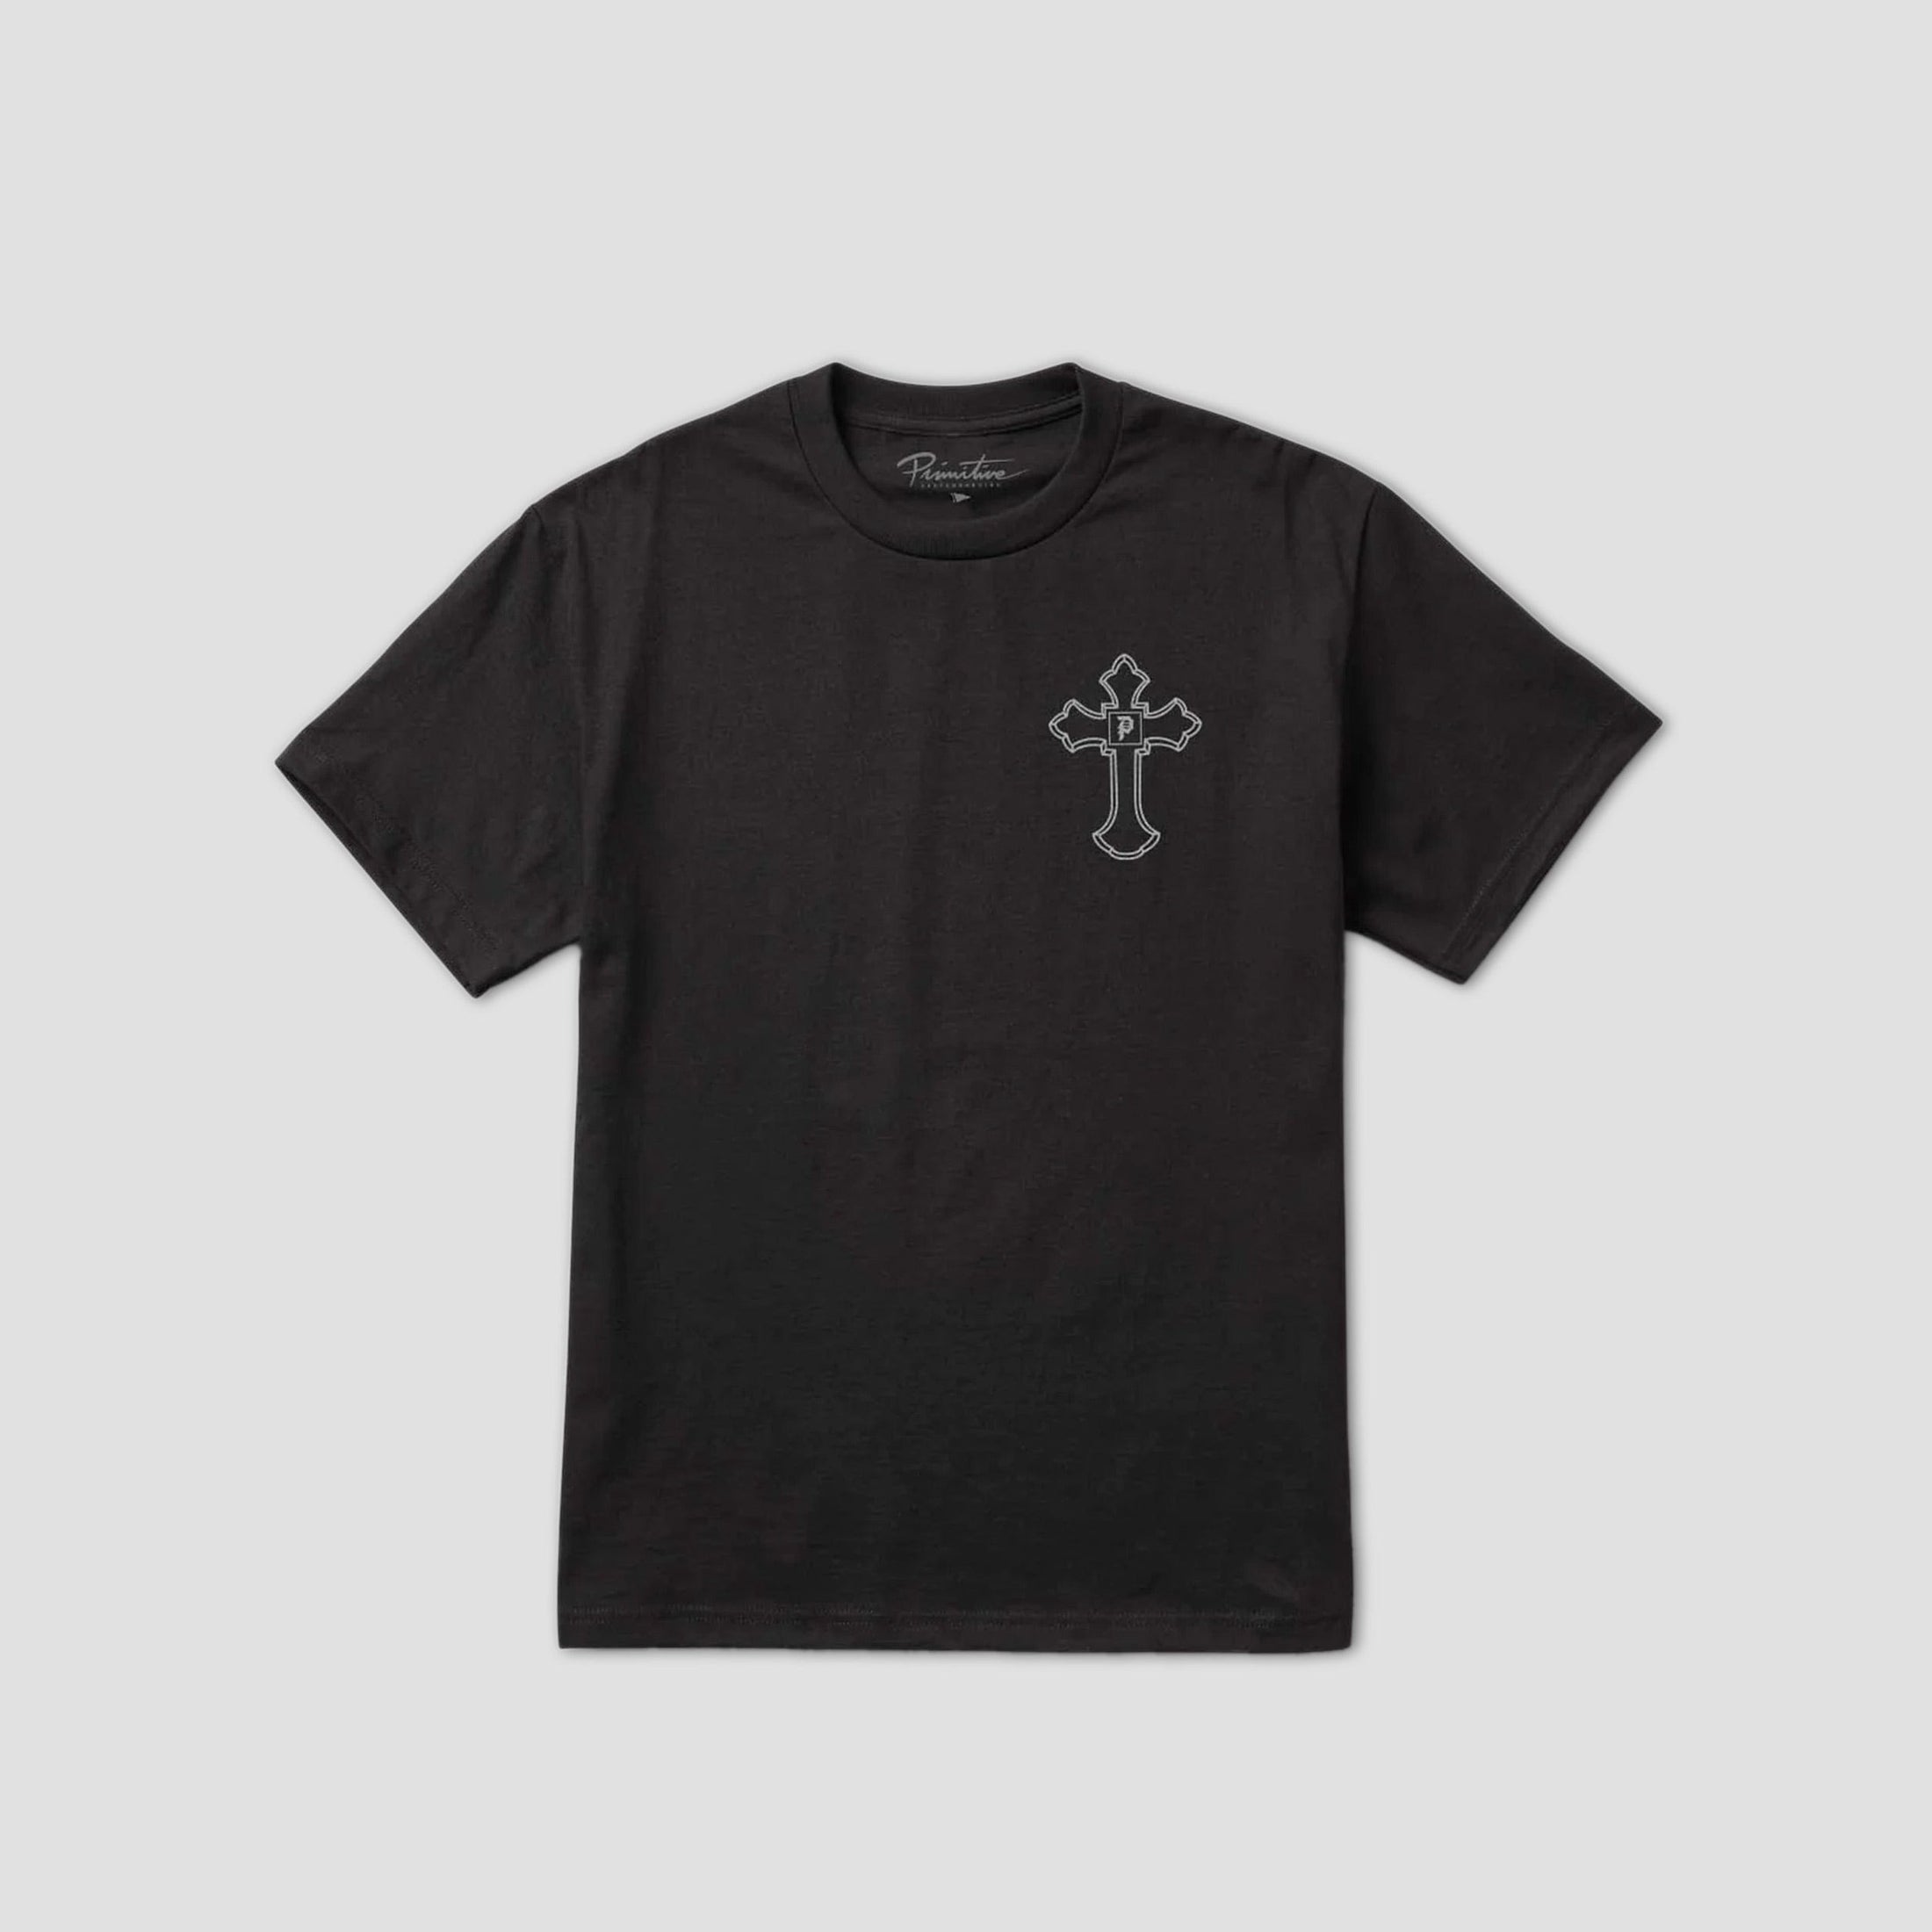 Primitive x Tupac Shakur Encore T-Shirt Black